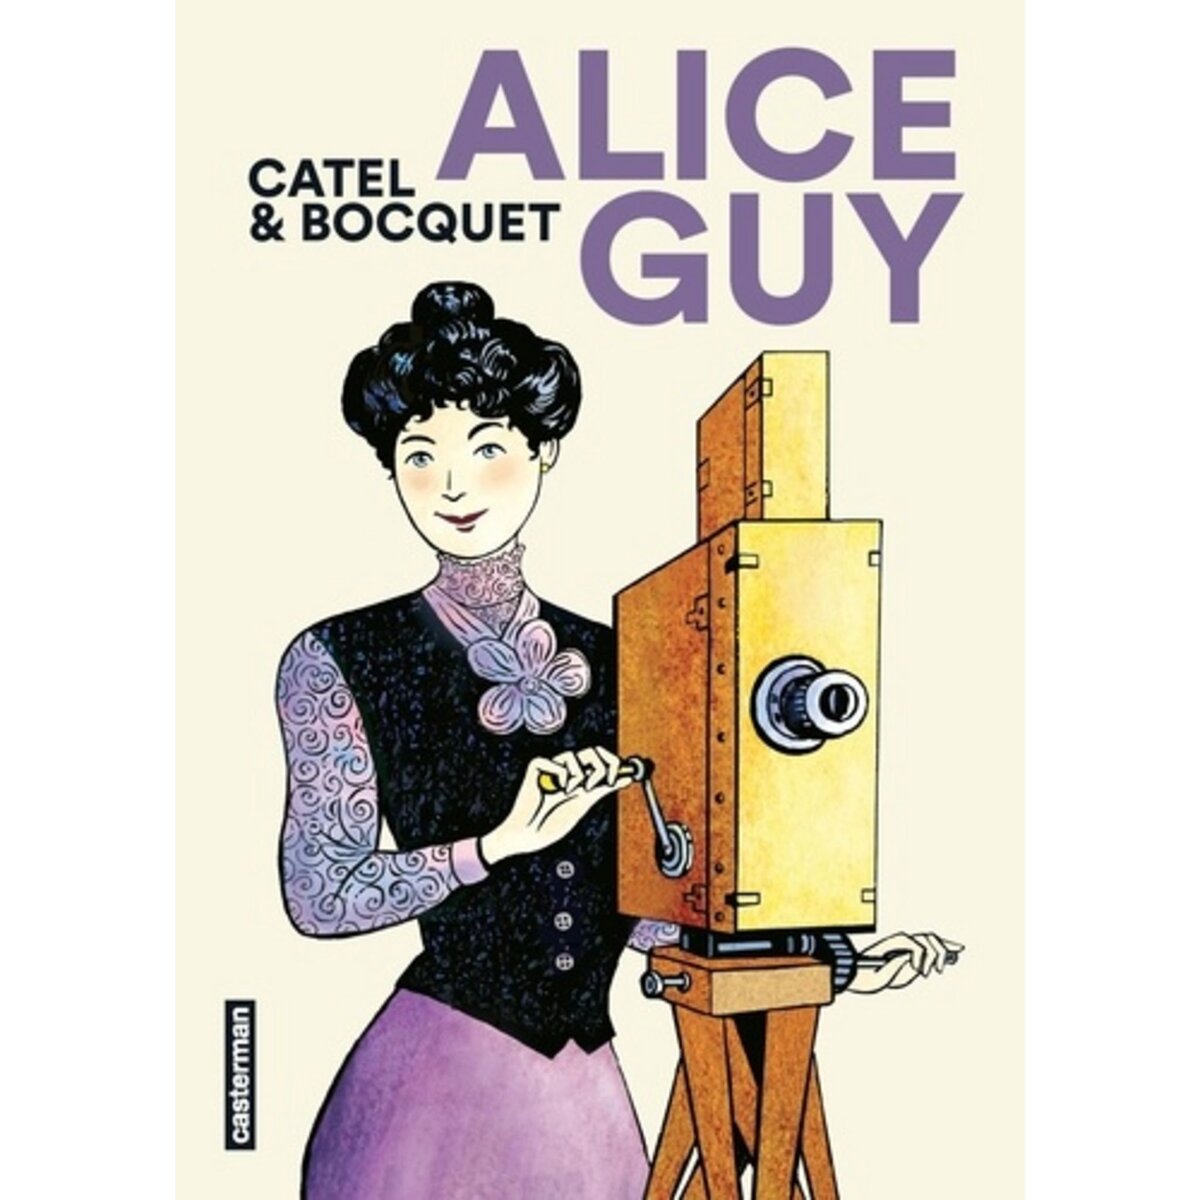  ALICE GUY, Bocquet José-Louis